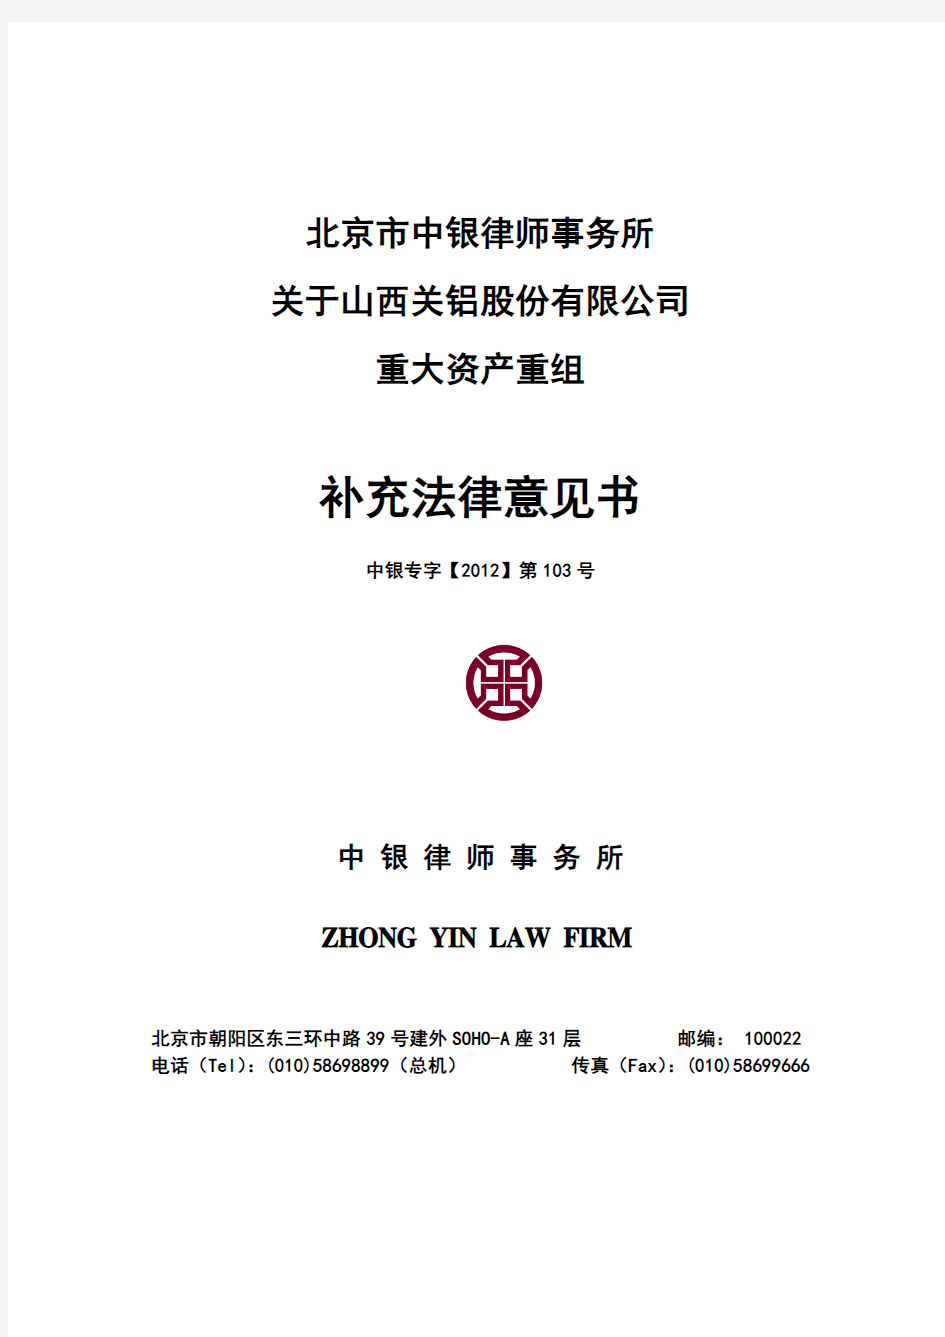 北京市中银律师事务所关于公司重大资产重组补充法律意见书